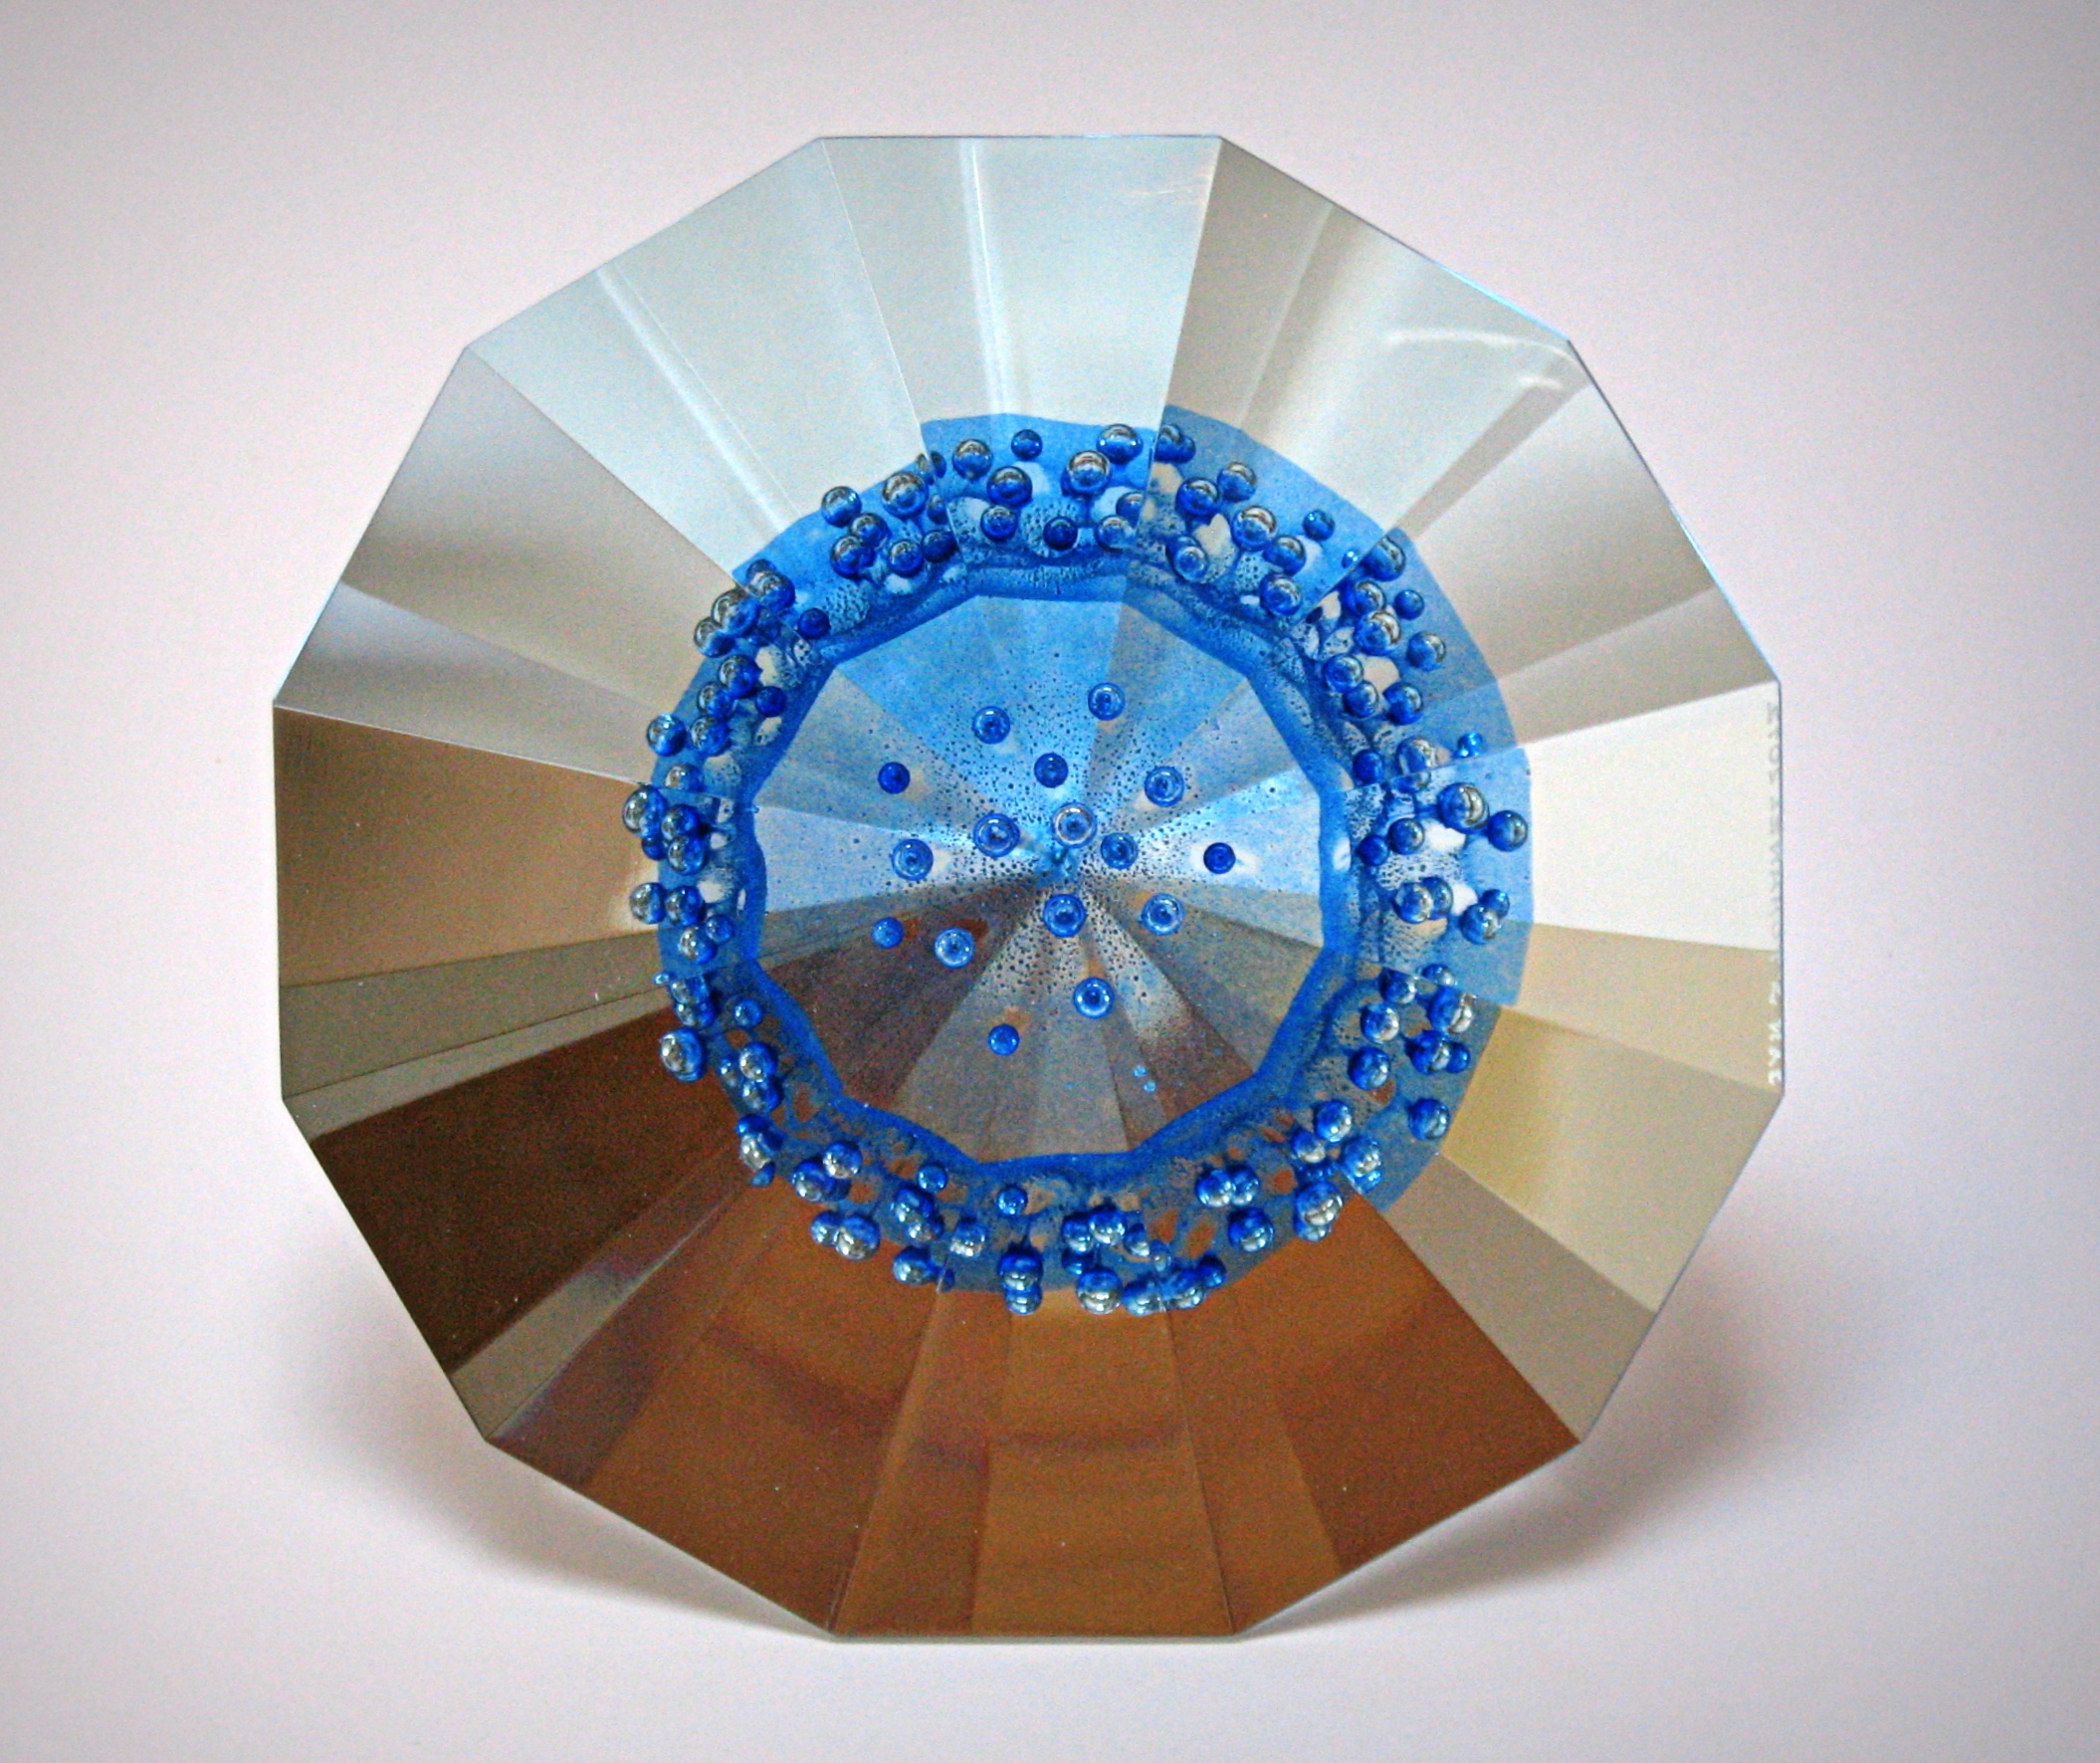 Stargate XXVI, průměr 18 cm, sododraselné sklo, 2012 